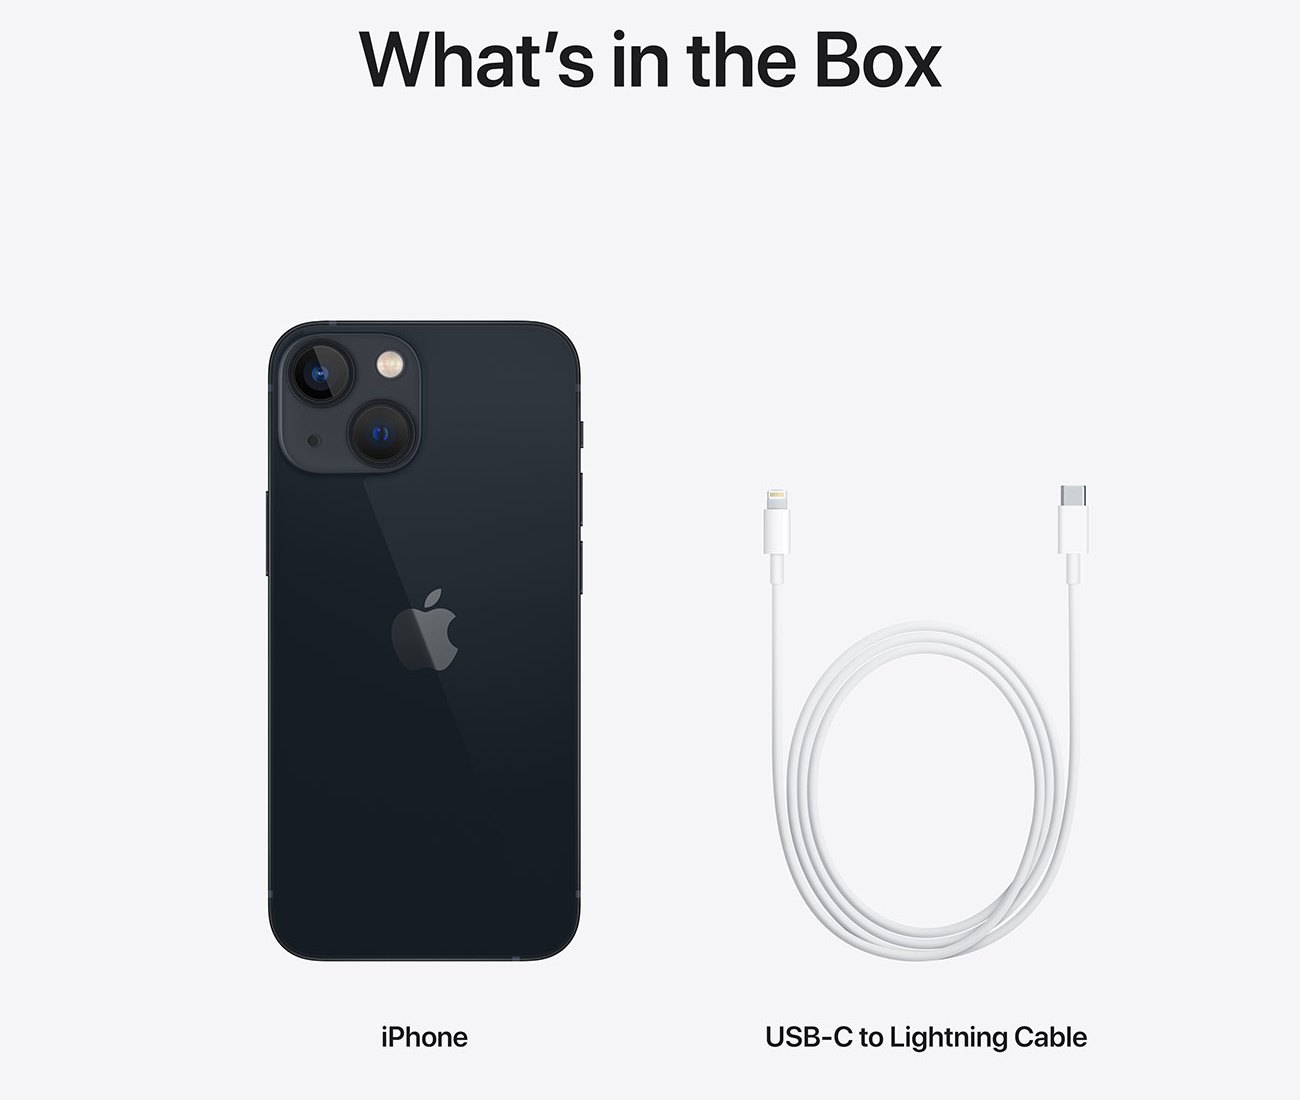 Součástí balení je pouze Apple iPhone 13 Mini a rychlonabíjecí USB-C/Lightning kabel = vysoká úspora emisí společnosti Apple